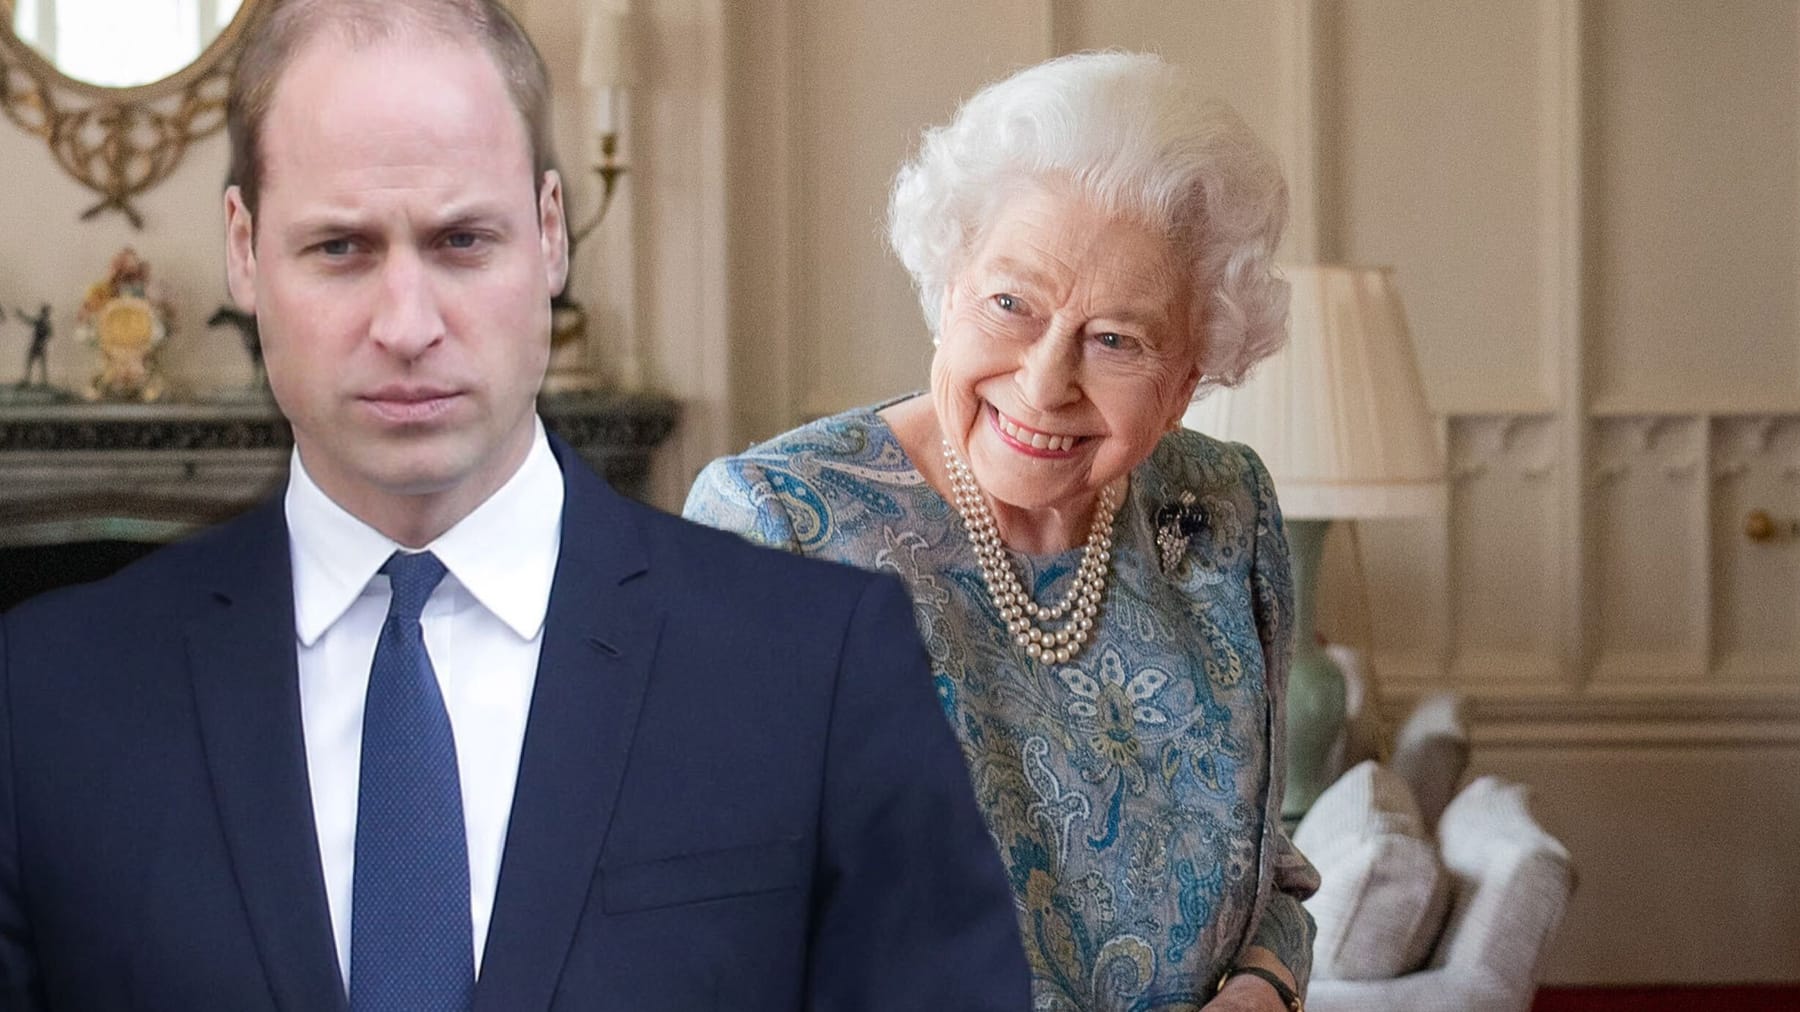 El príncipe William lamenta la pérdida de su “abuela”